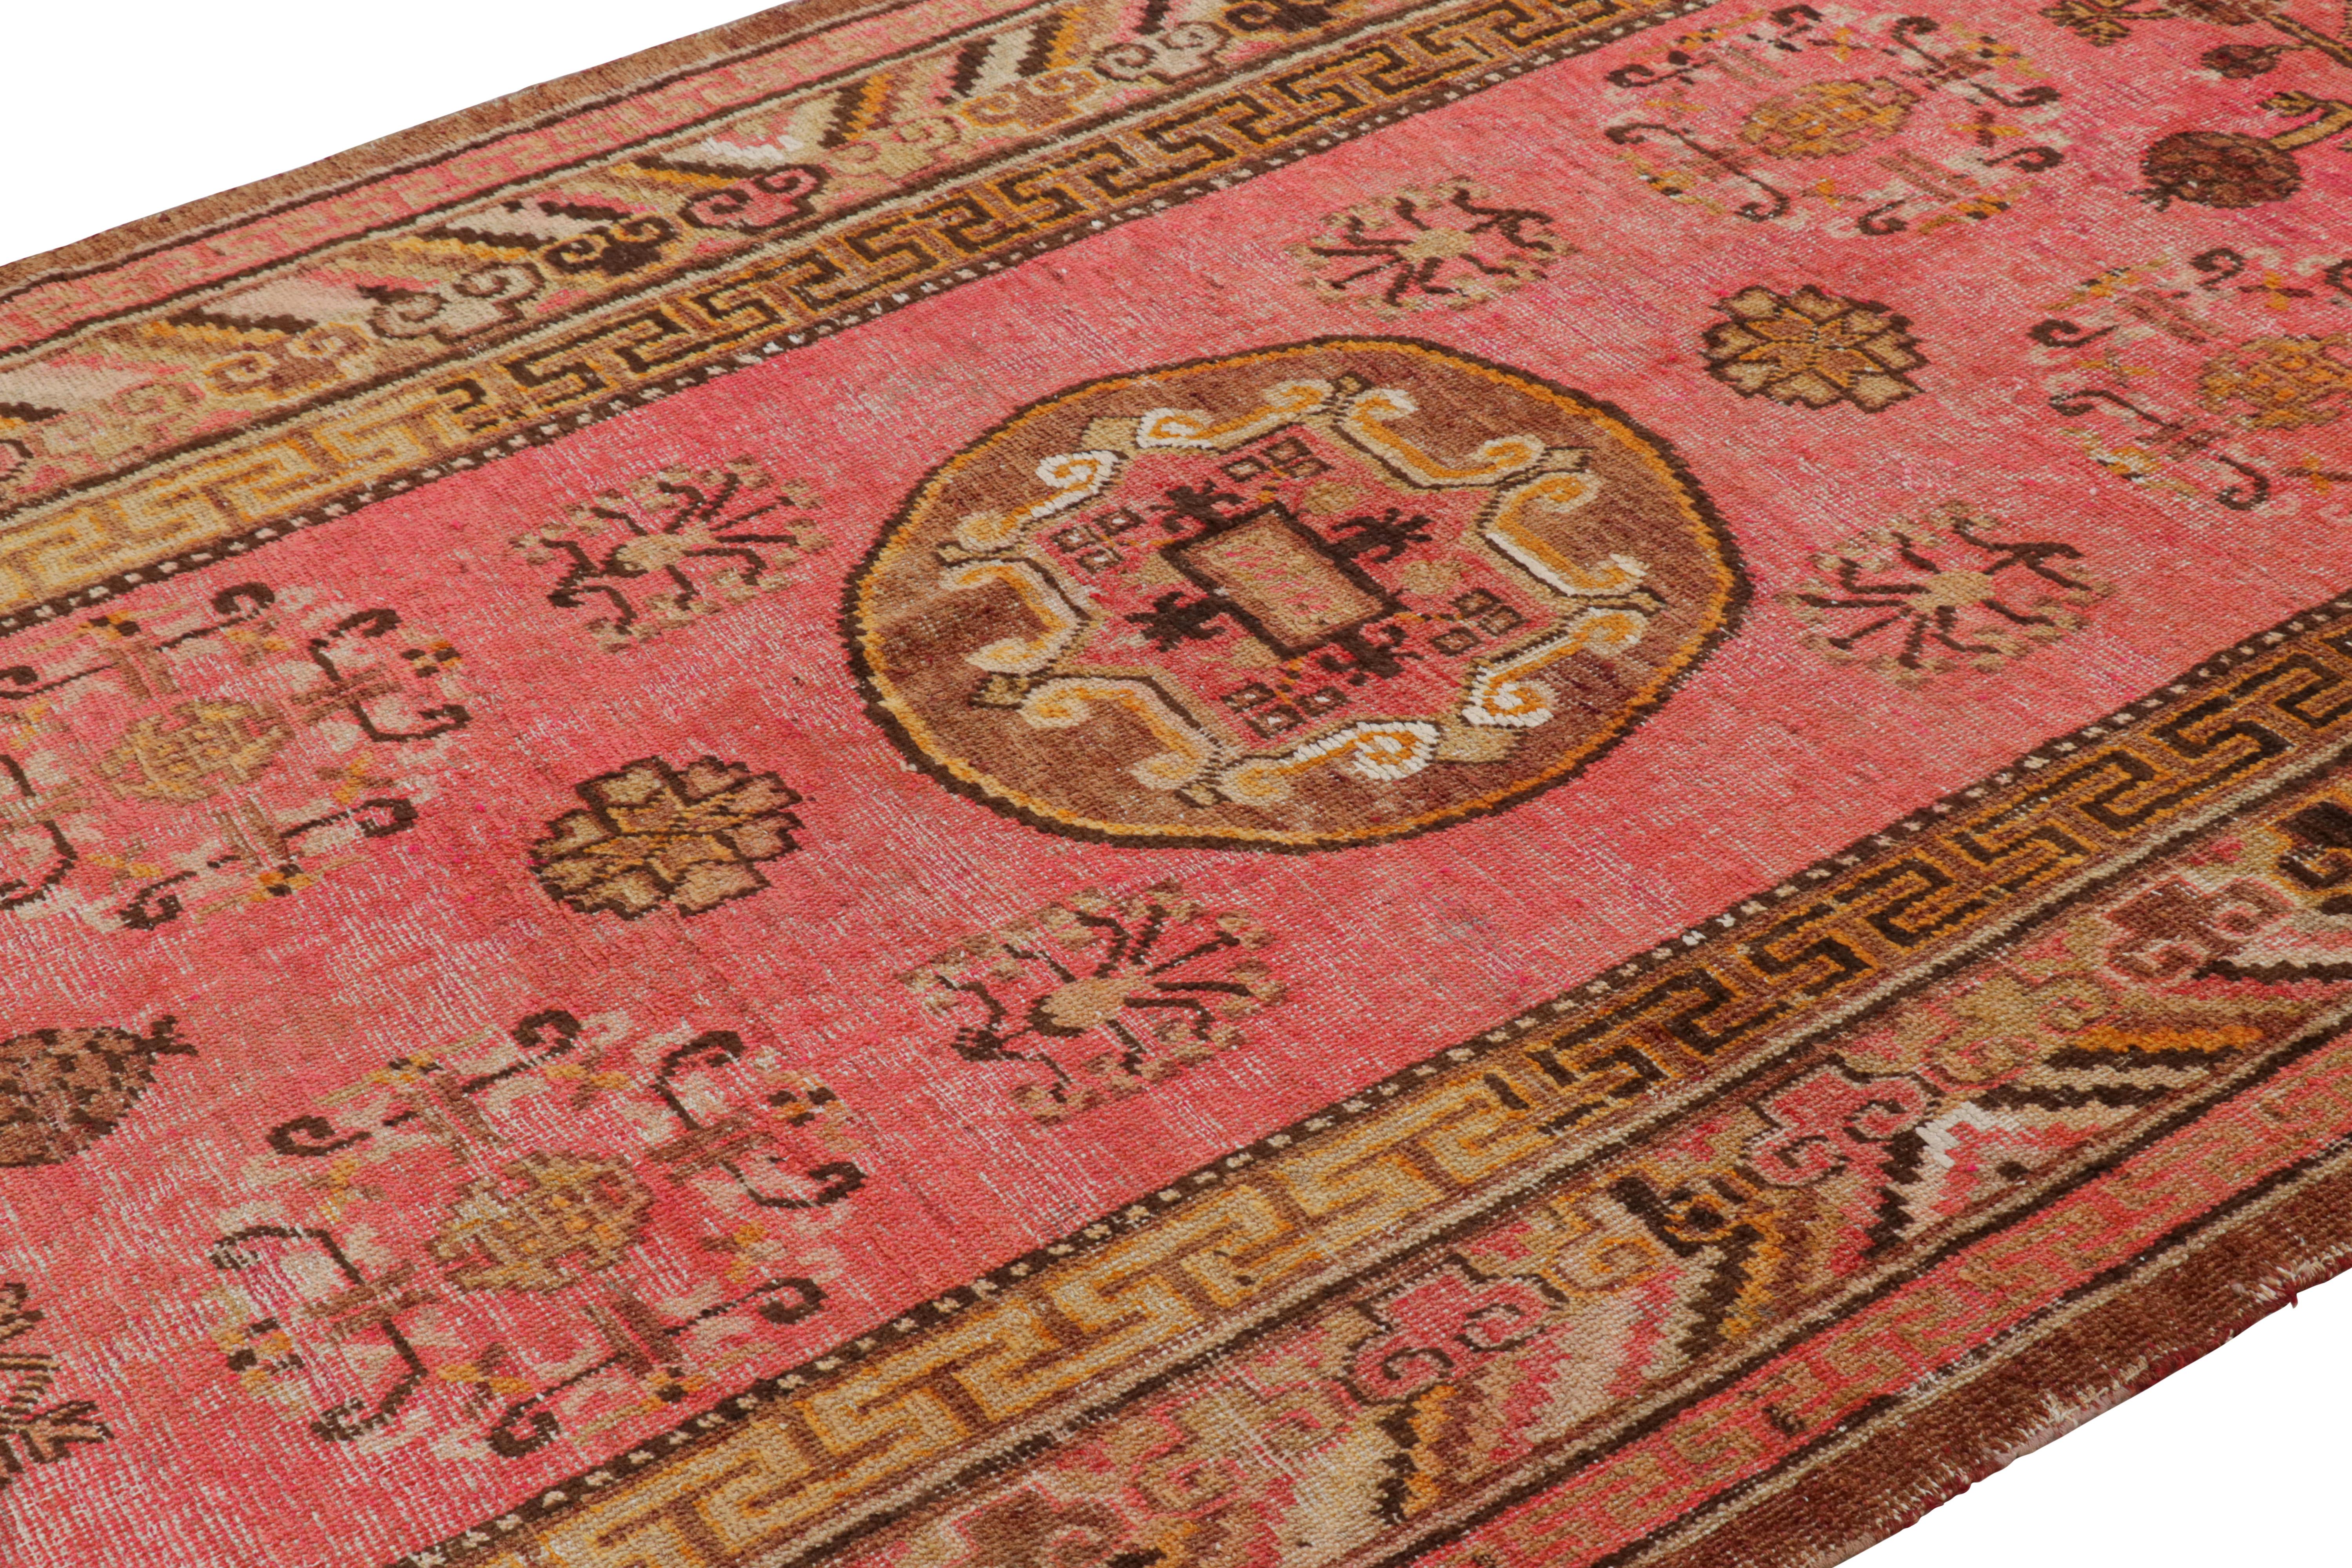 Dieser antike Khotan-Übergangsteppich von Rug & Kilim, der zwischen 1920 und 1940 in Ostturkestan hergestellt wurde, weist in seinen Rändern eine Fülle von chinesischen Motiven auf. Das aus hochwertiger Wolle handgewebte goldbraune Medaillonmuster